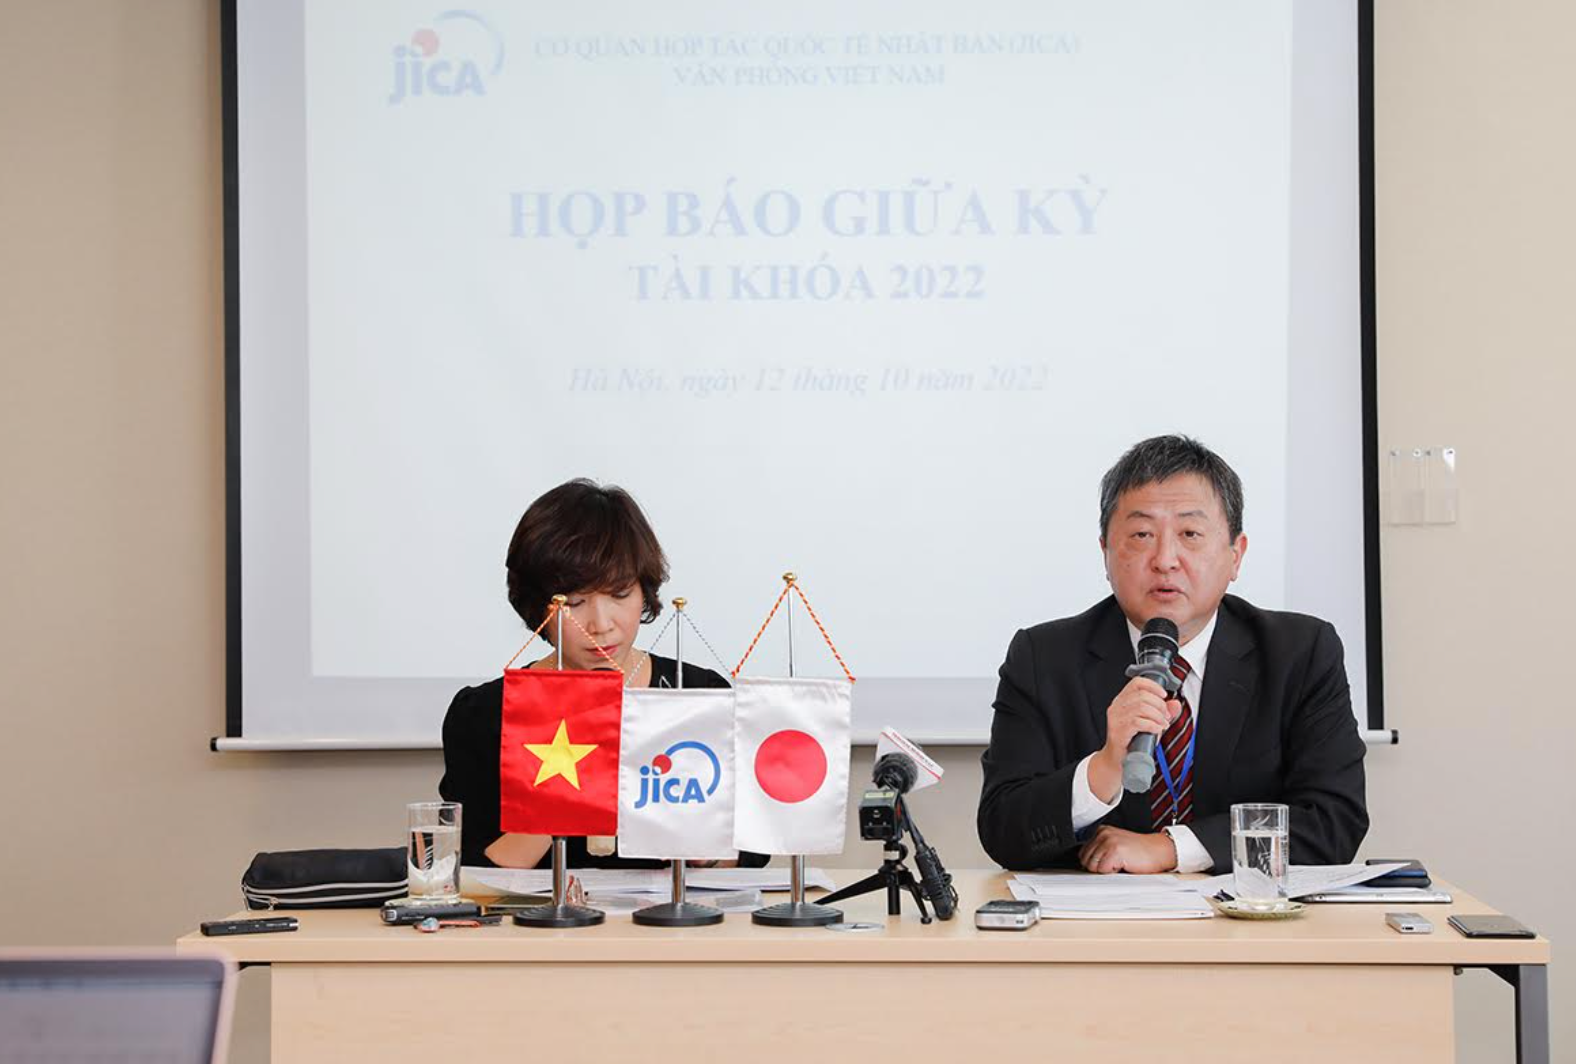 JICA sẽ tiếp tục nỗ lực để đóng góp nhiều hơn nữa vào sự phát triển của Việt Nam thông qua ODA, đồng thời tăng cường kết nối người dân hai nước Việt Nam - Nhật Bản